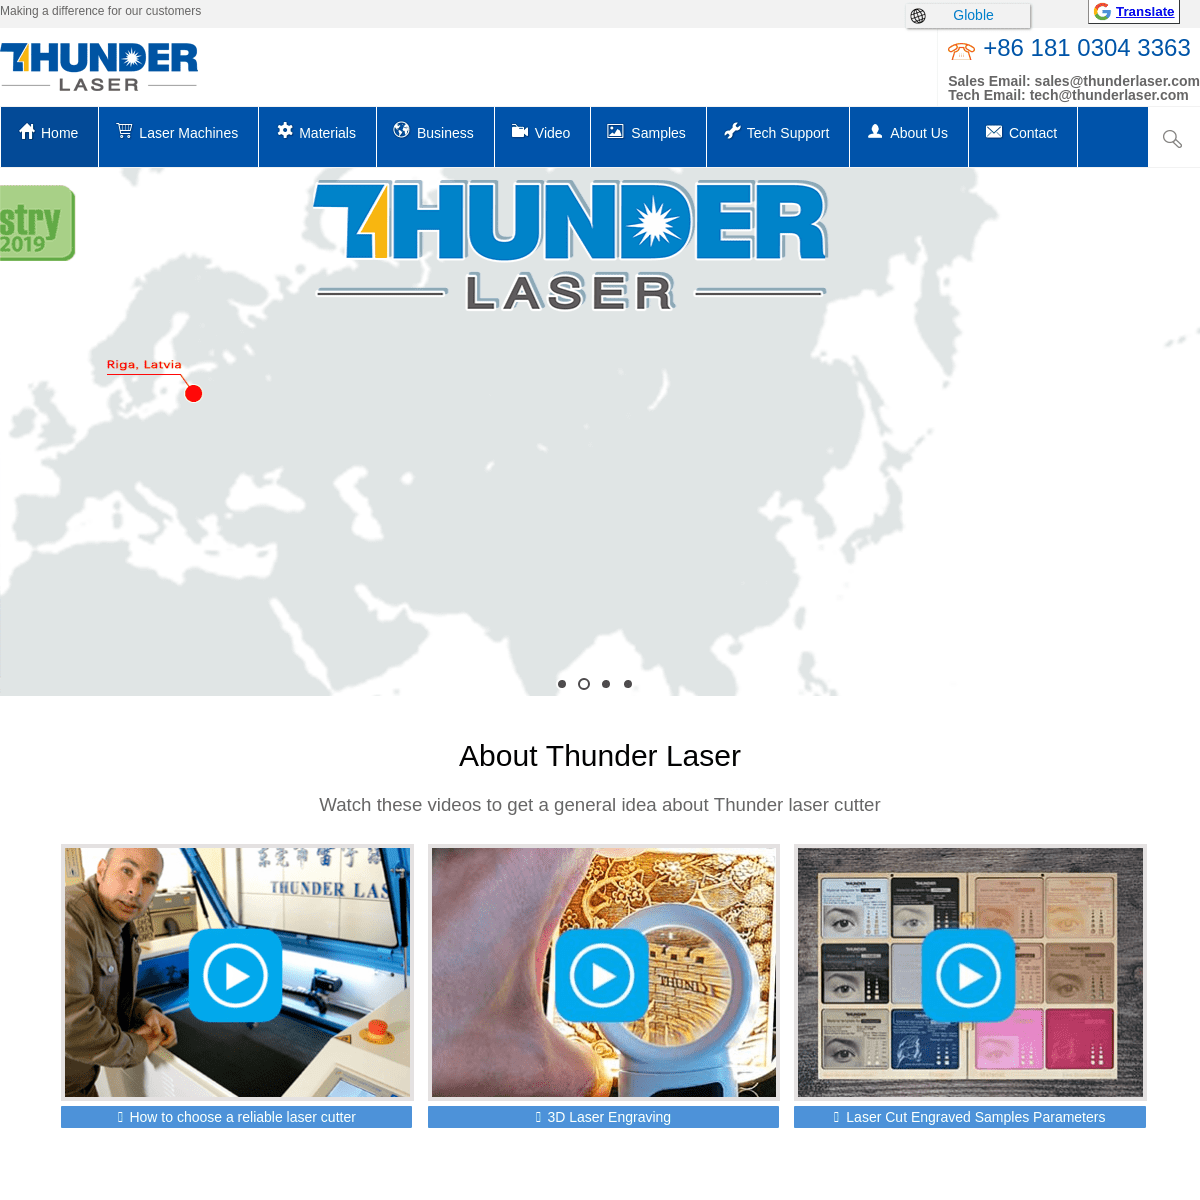 A complete backup of thunderlaser.com